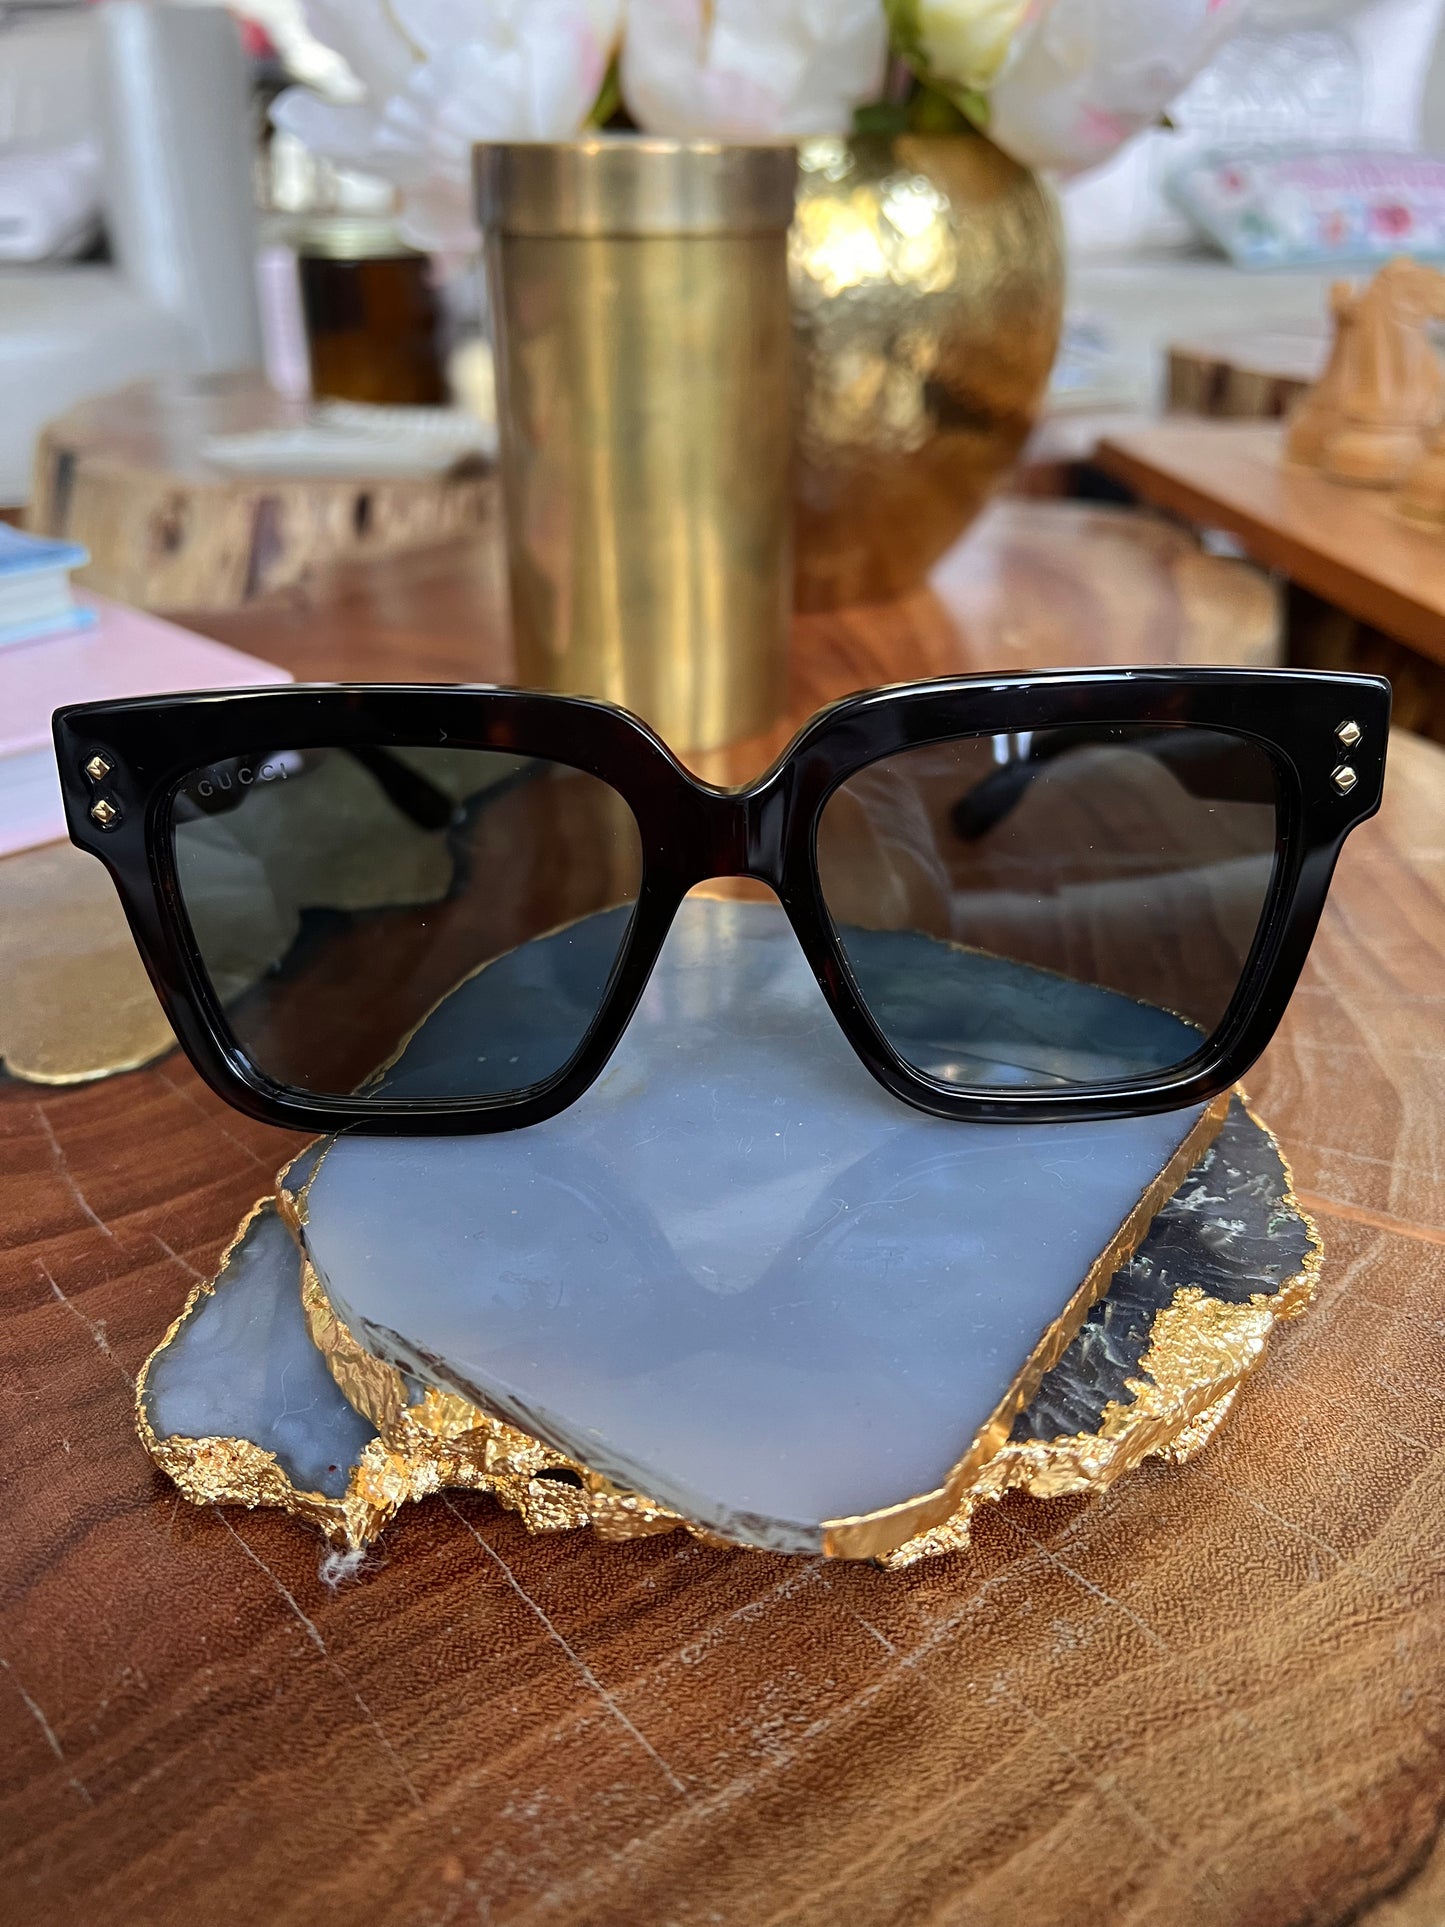 Gucci Unisex Sunglasses